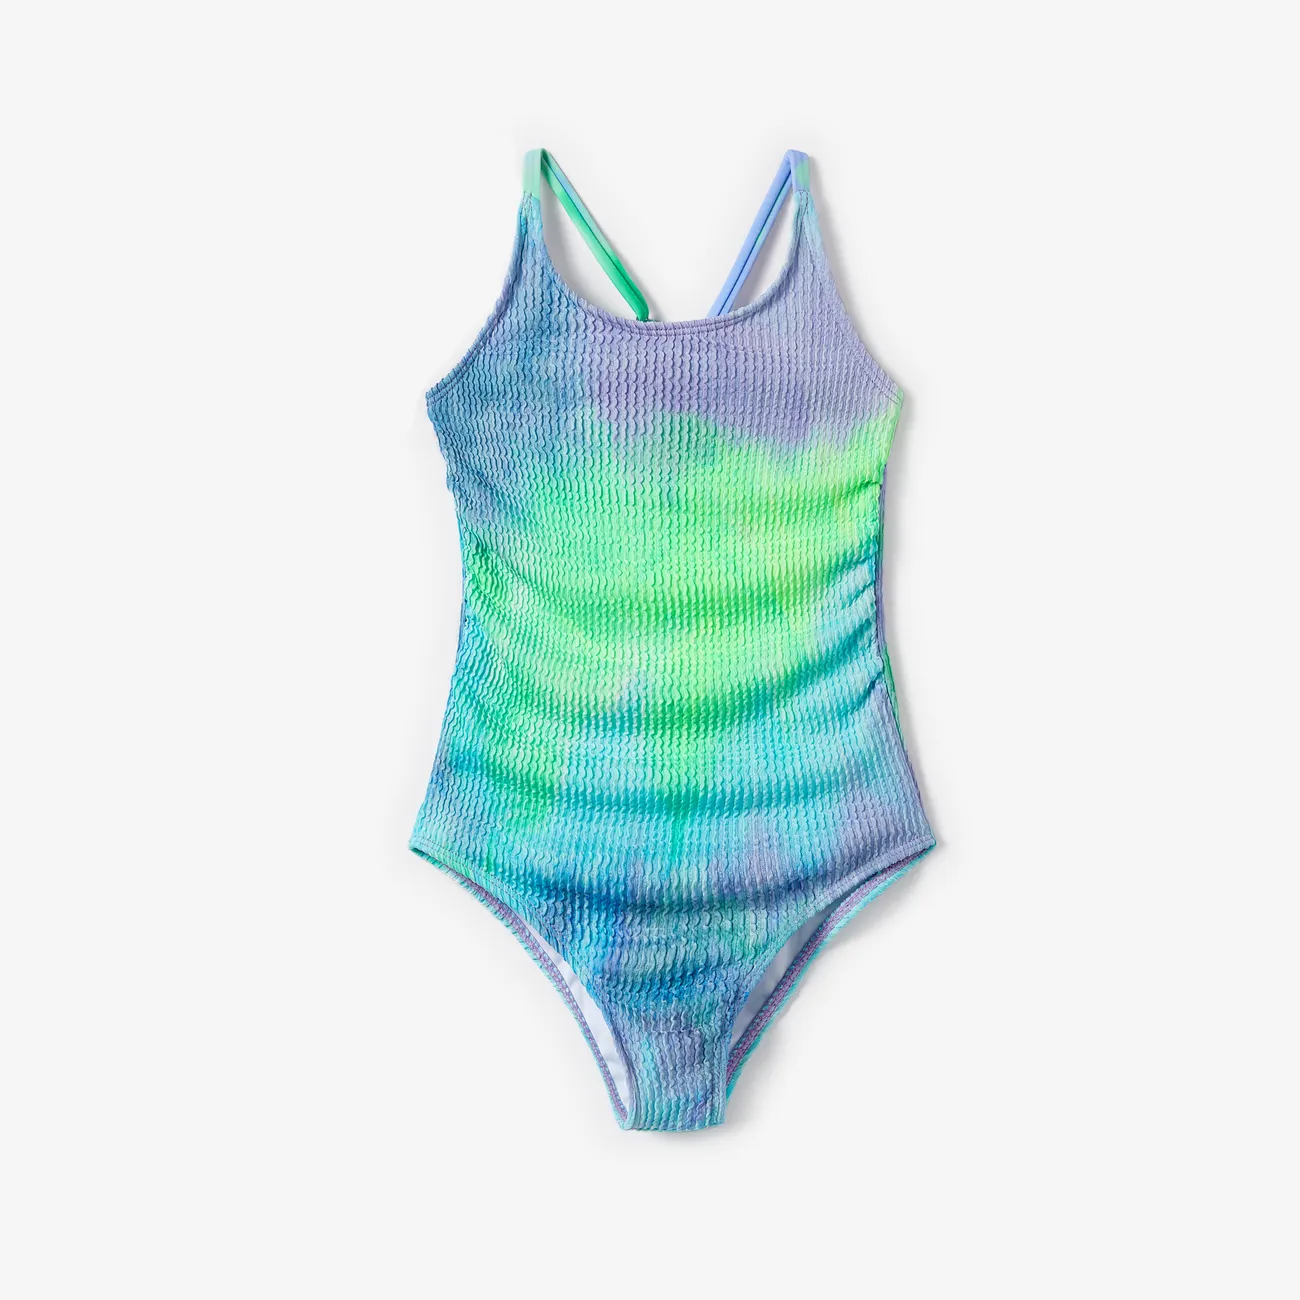 ملابس السباحة إطلالة العائلة للجنسين توب بحمالات صبغ التعادل متعدد الألوان big image 1